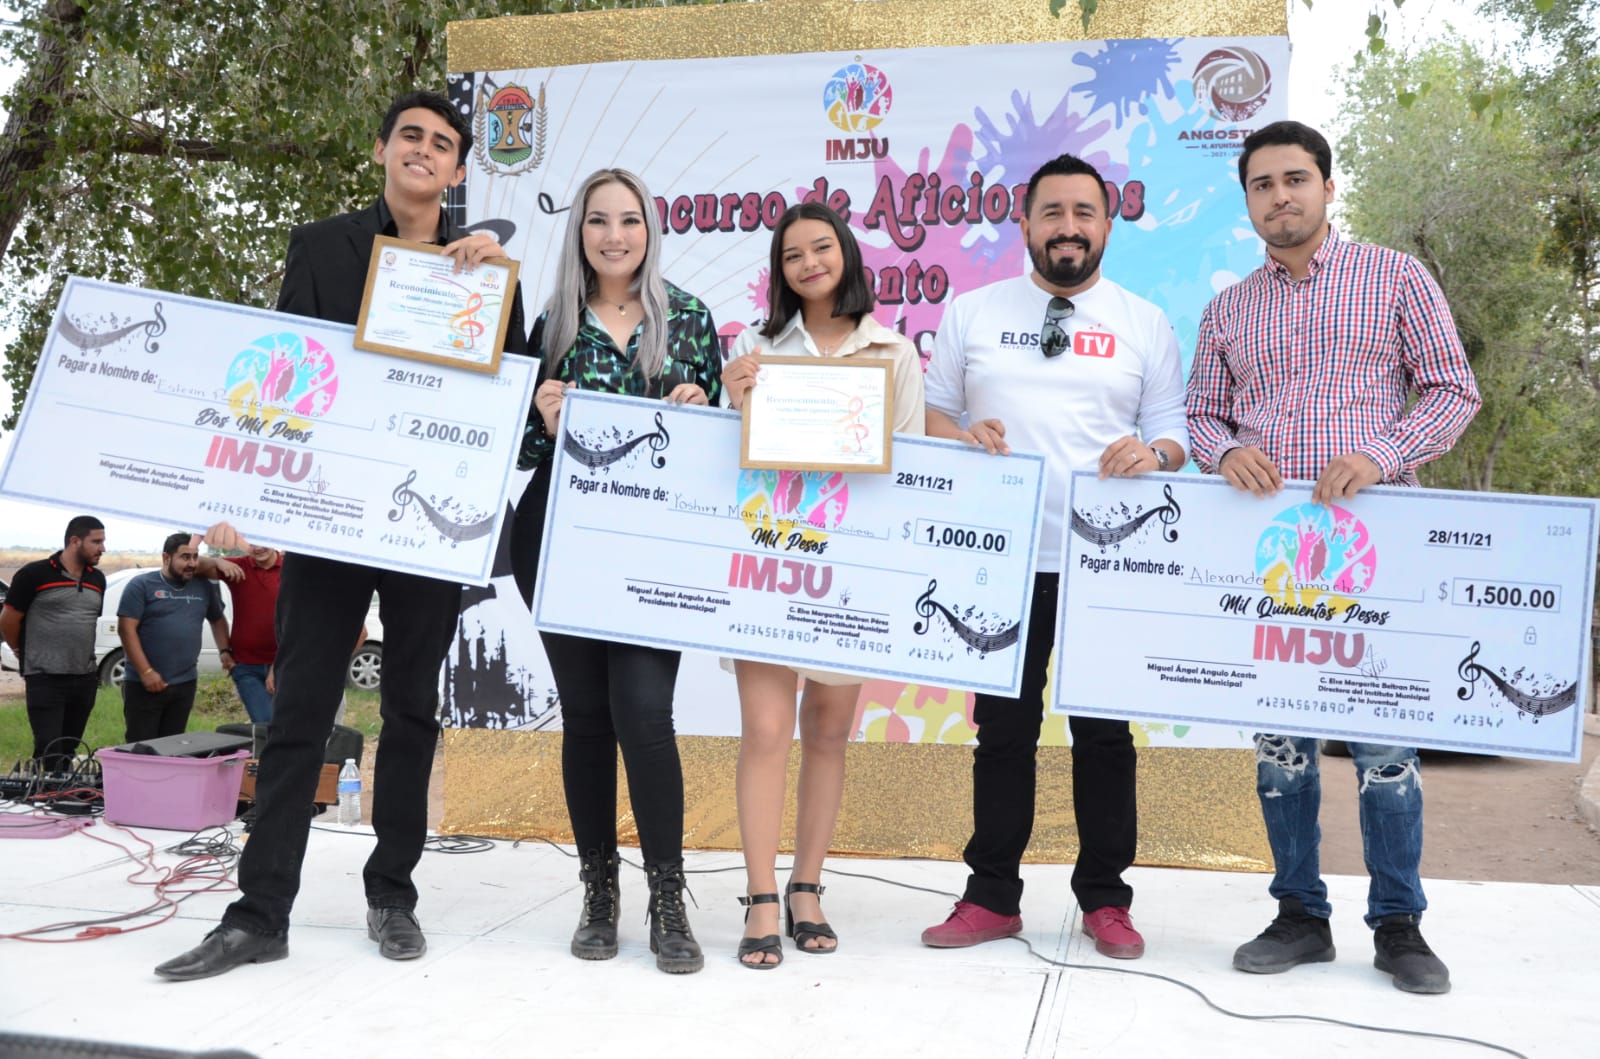 Ayuntamiento de Angostura lleva a cabo con gran éxito la Muestra Gastronómica y el Concurso de Aficionados